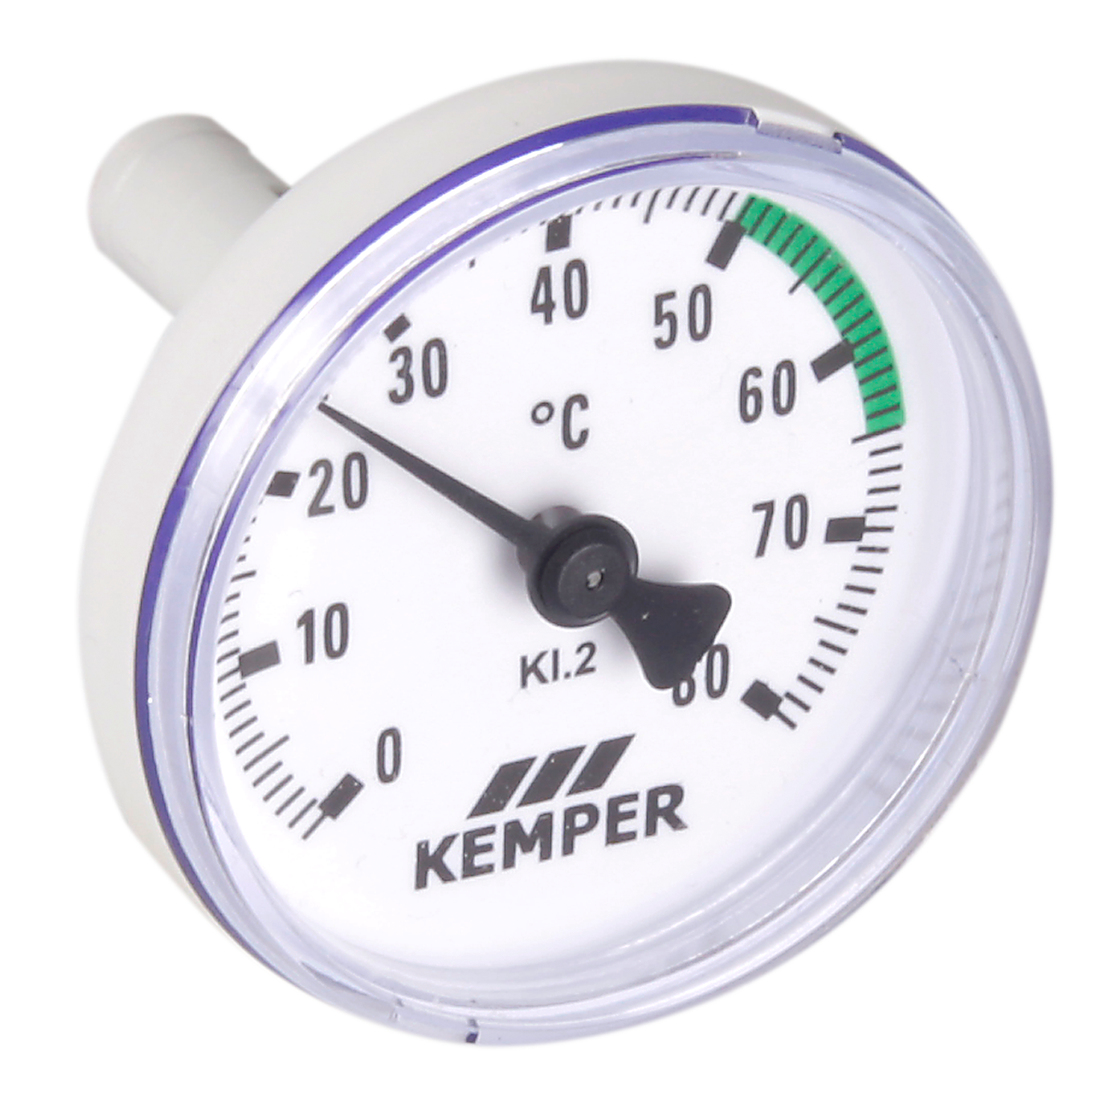 Zeigerthermometer, Figur T5100 150 00